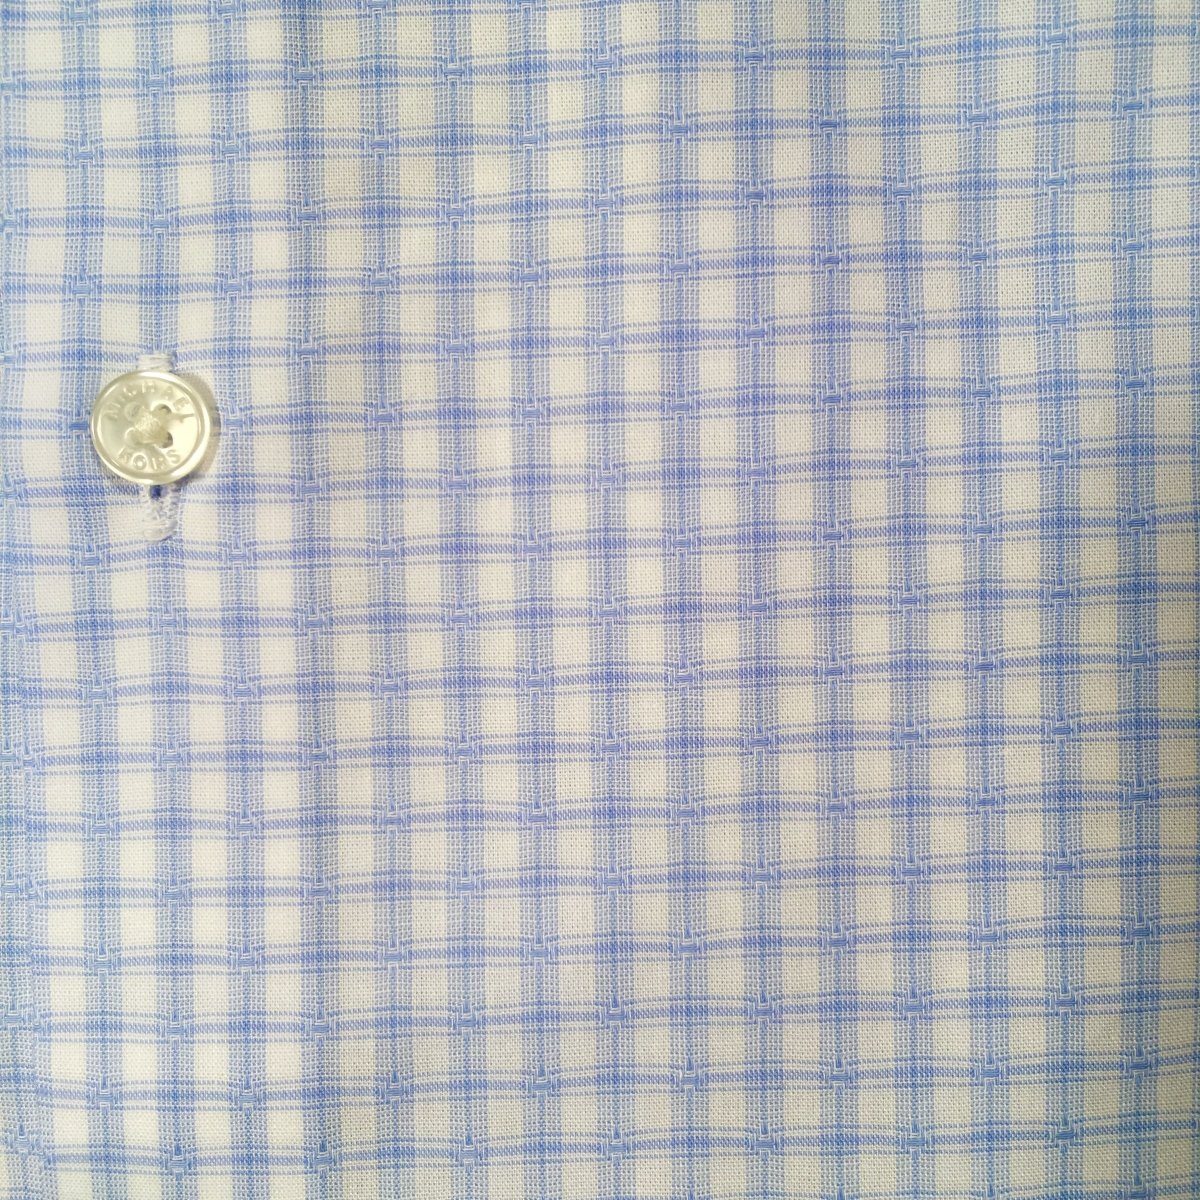 Michael Kors Boys Cotton Blue/White Check Dress Shirt Z0341 Dress Shirts Michael Kors 